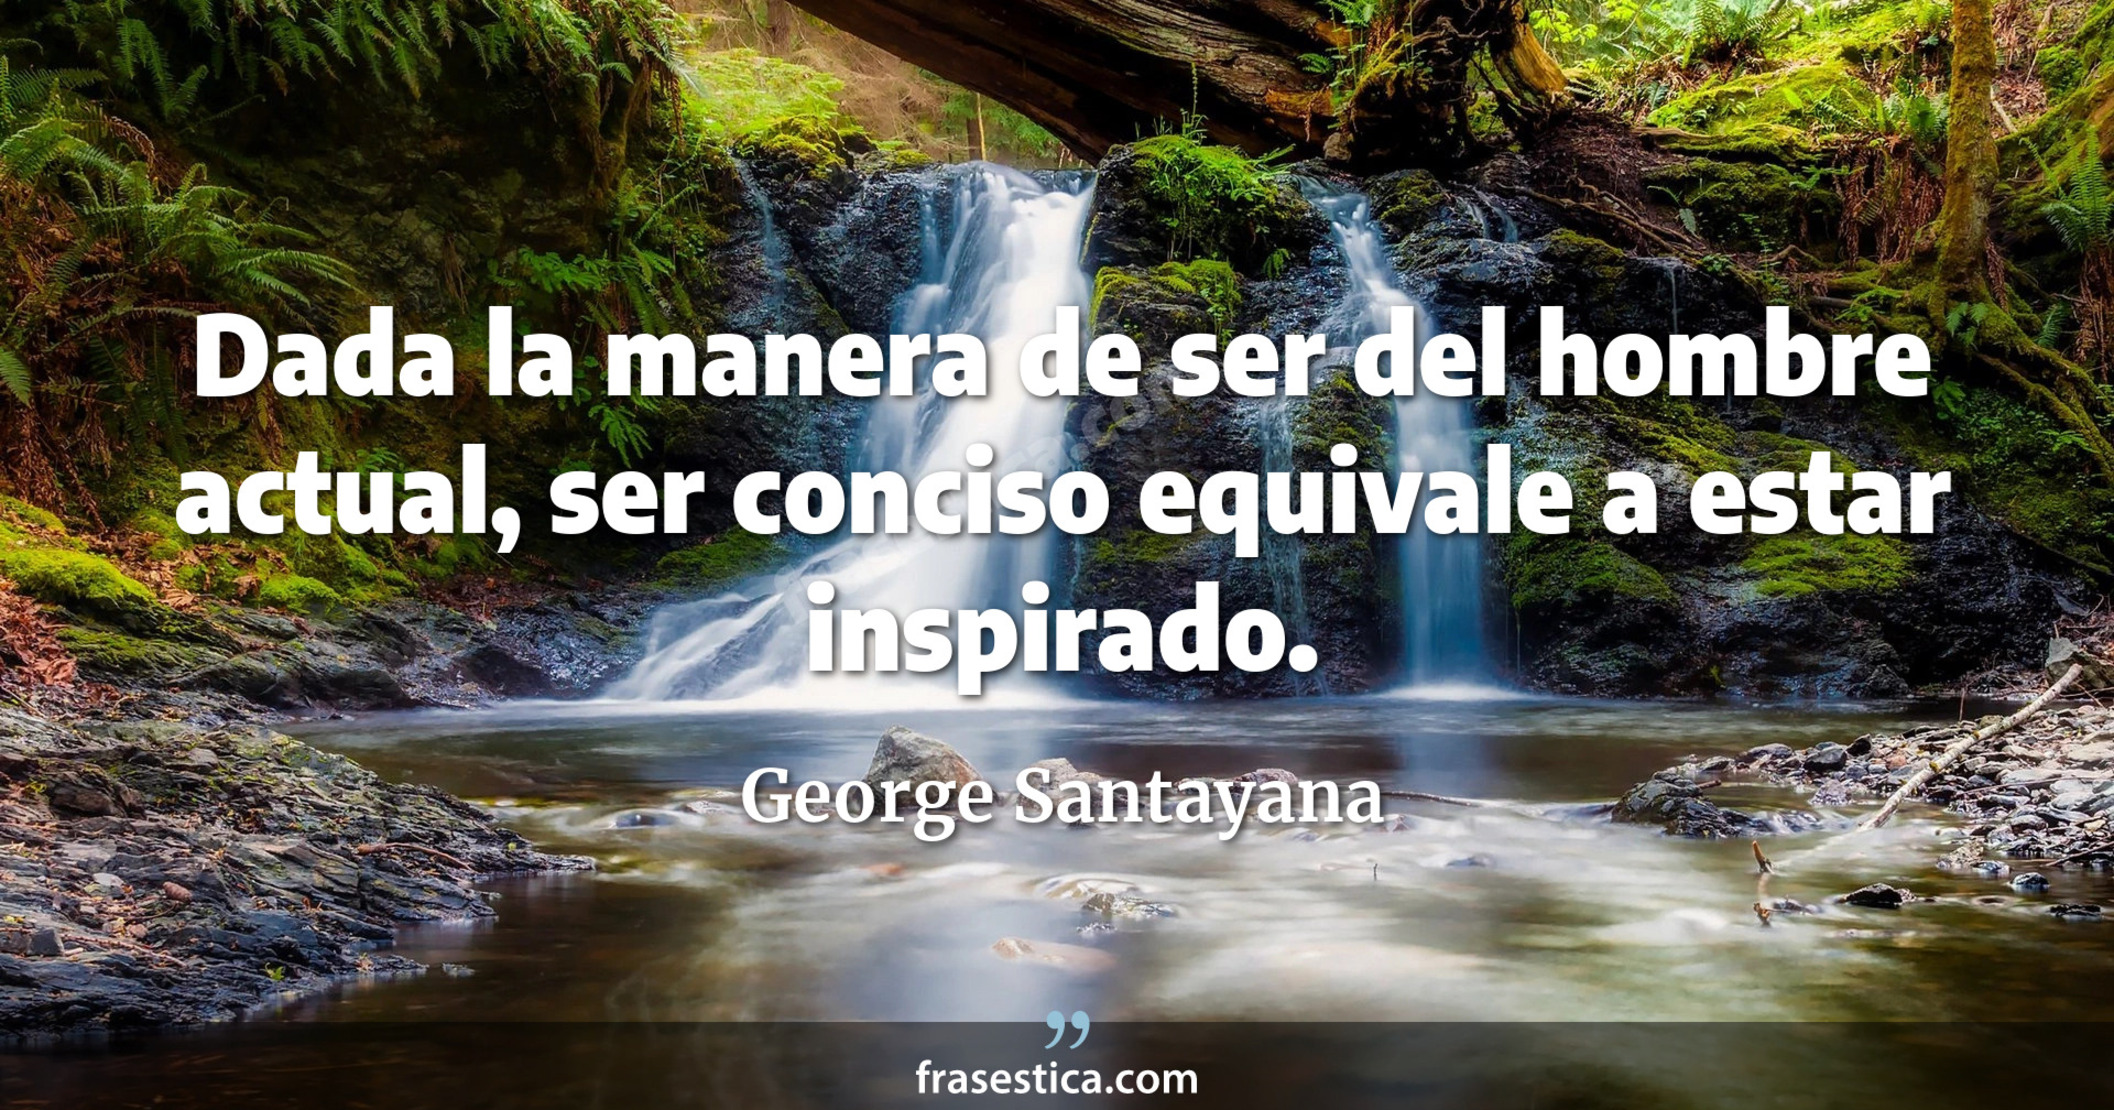 Dada la manera de ser del hombre actual, ser conciso equivale a estar inspirado. - George Santayana